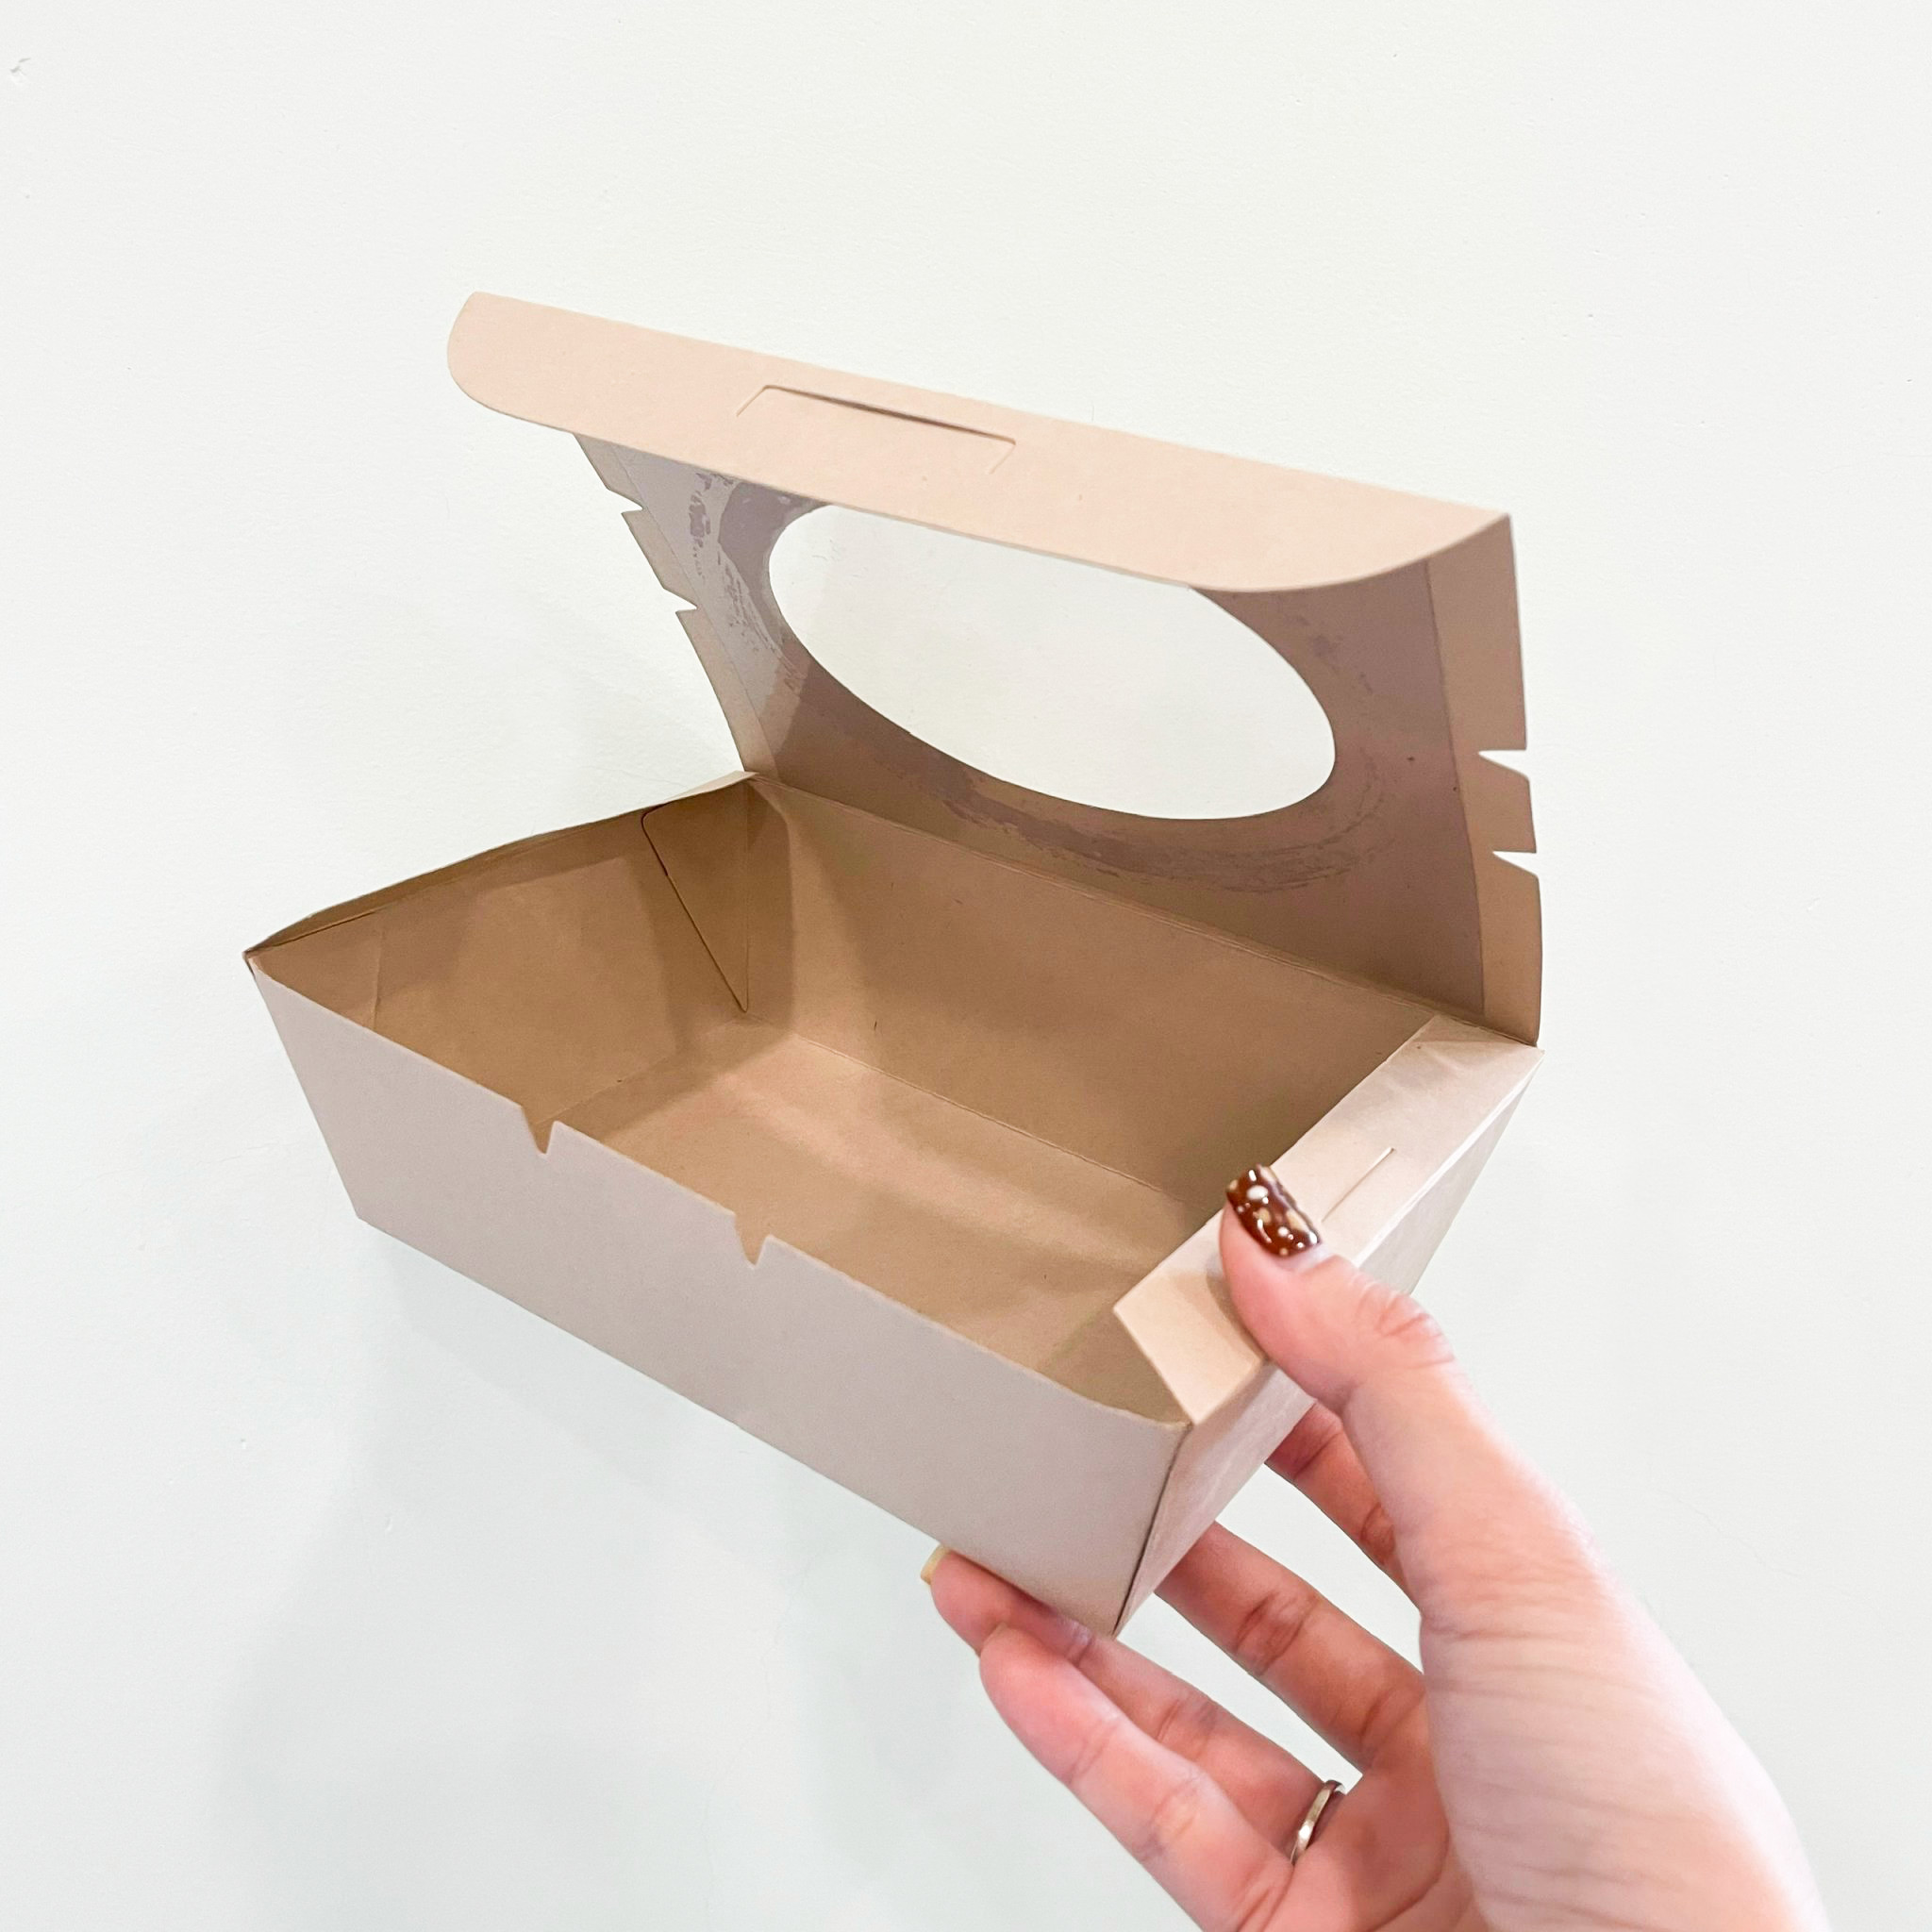 [KV] Hộp giấy đựng cơm/salad -Gói 25 hộp giấy trơn